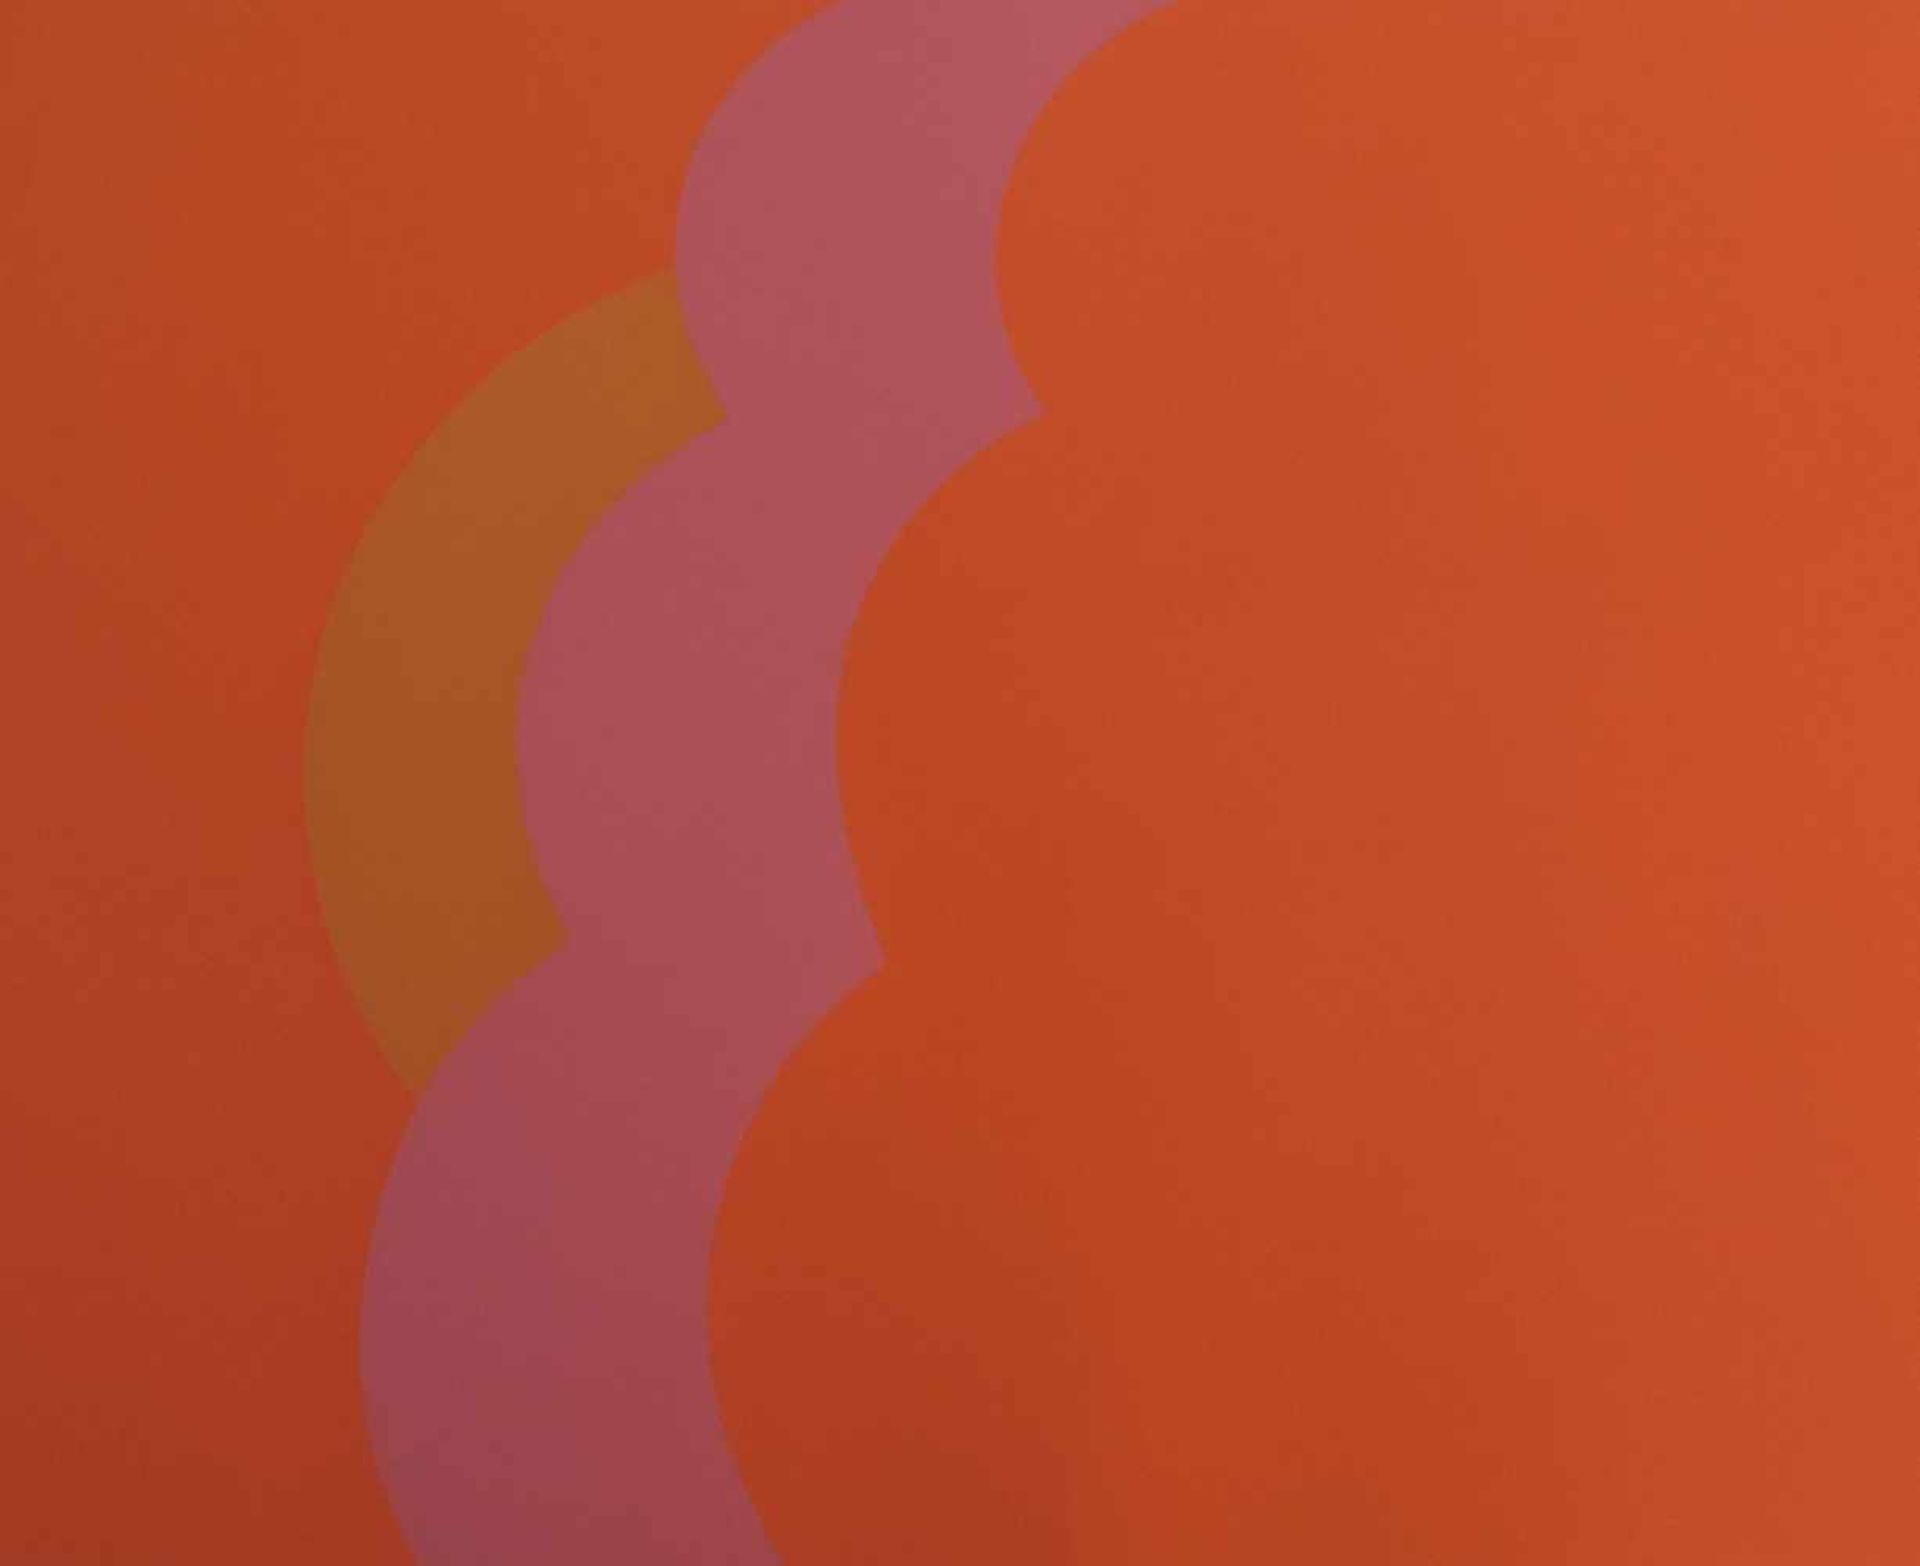 ANONYMUS/MA, Paar Farbserigrafien, geometrische Kompositionen in Blau u Orange, verso sign u num, 57 - Bild 2 aus 2